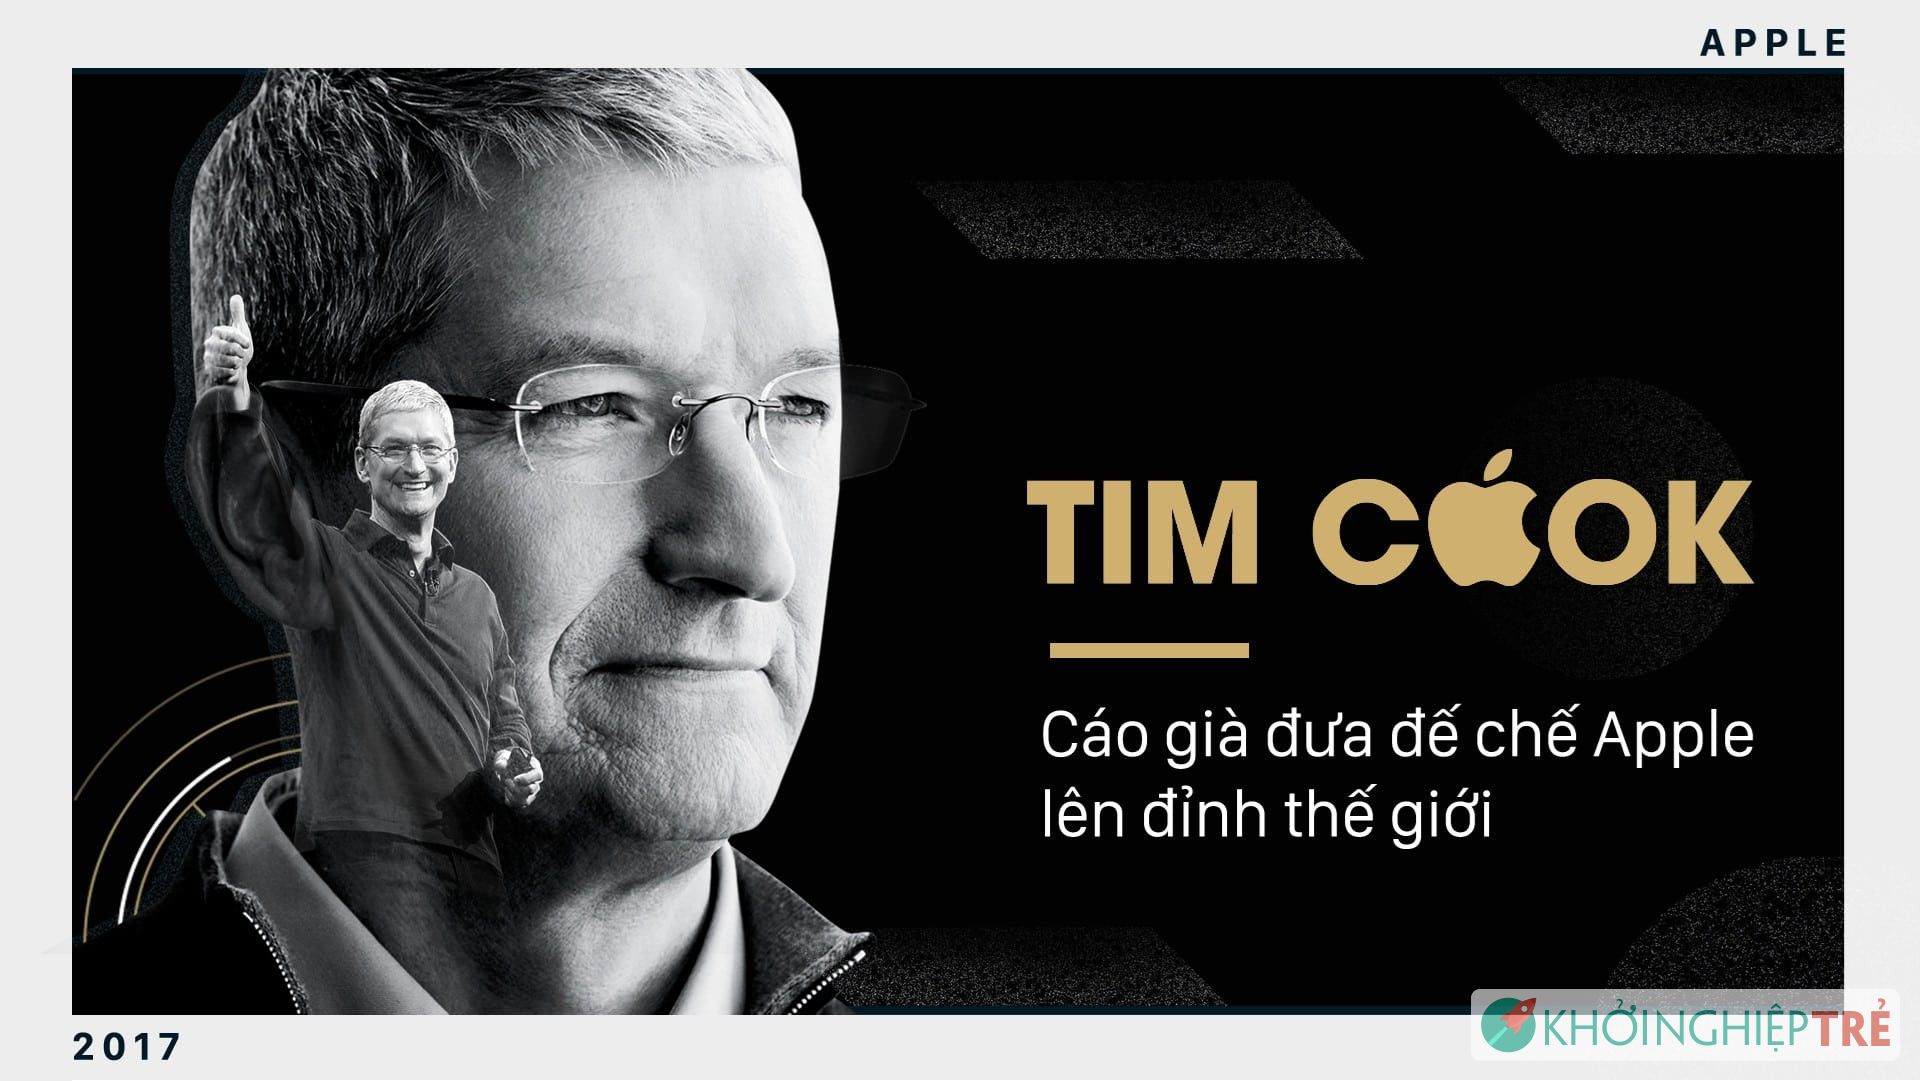 CEO Tim Cook: Cáo già đưa đế chế Apple lên đỉnh thế giới